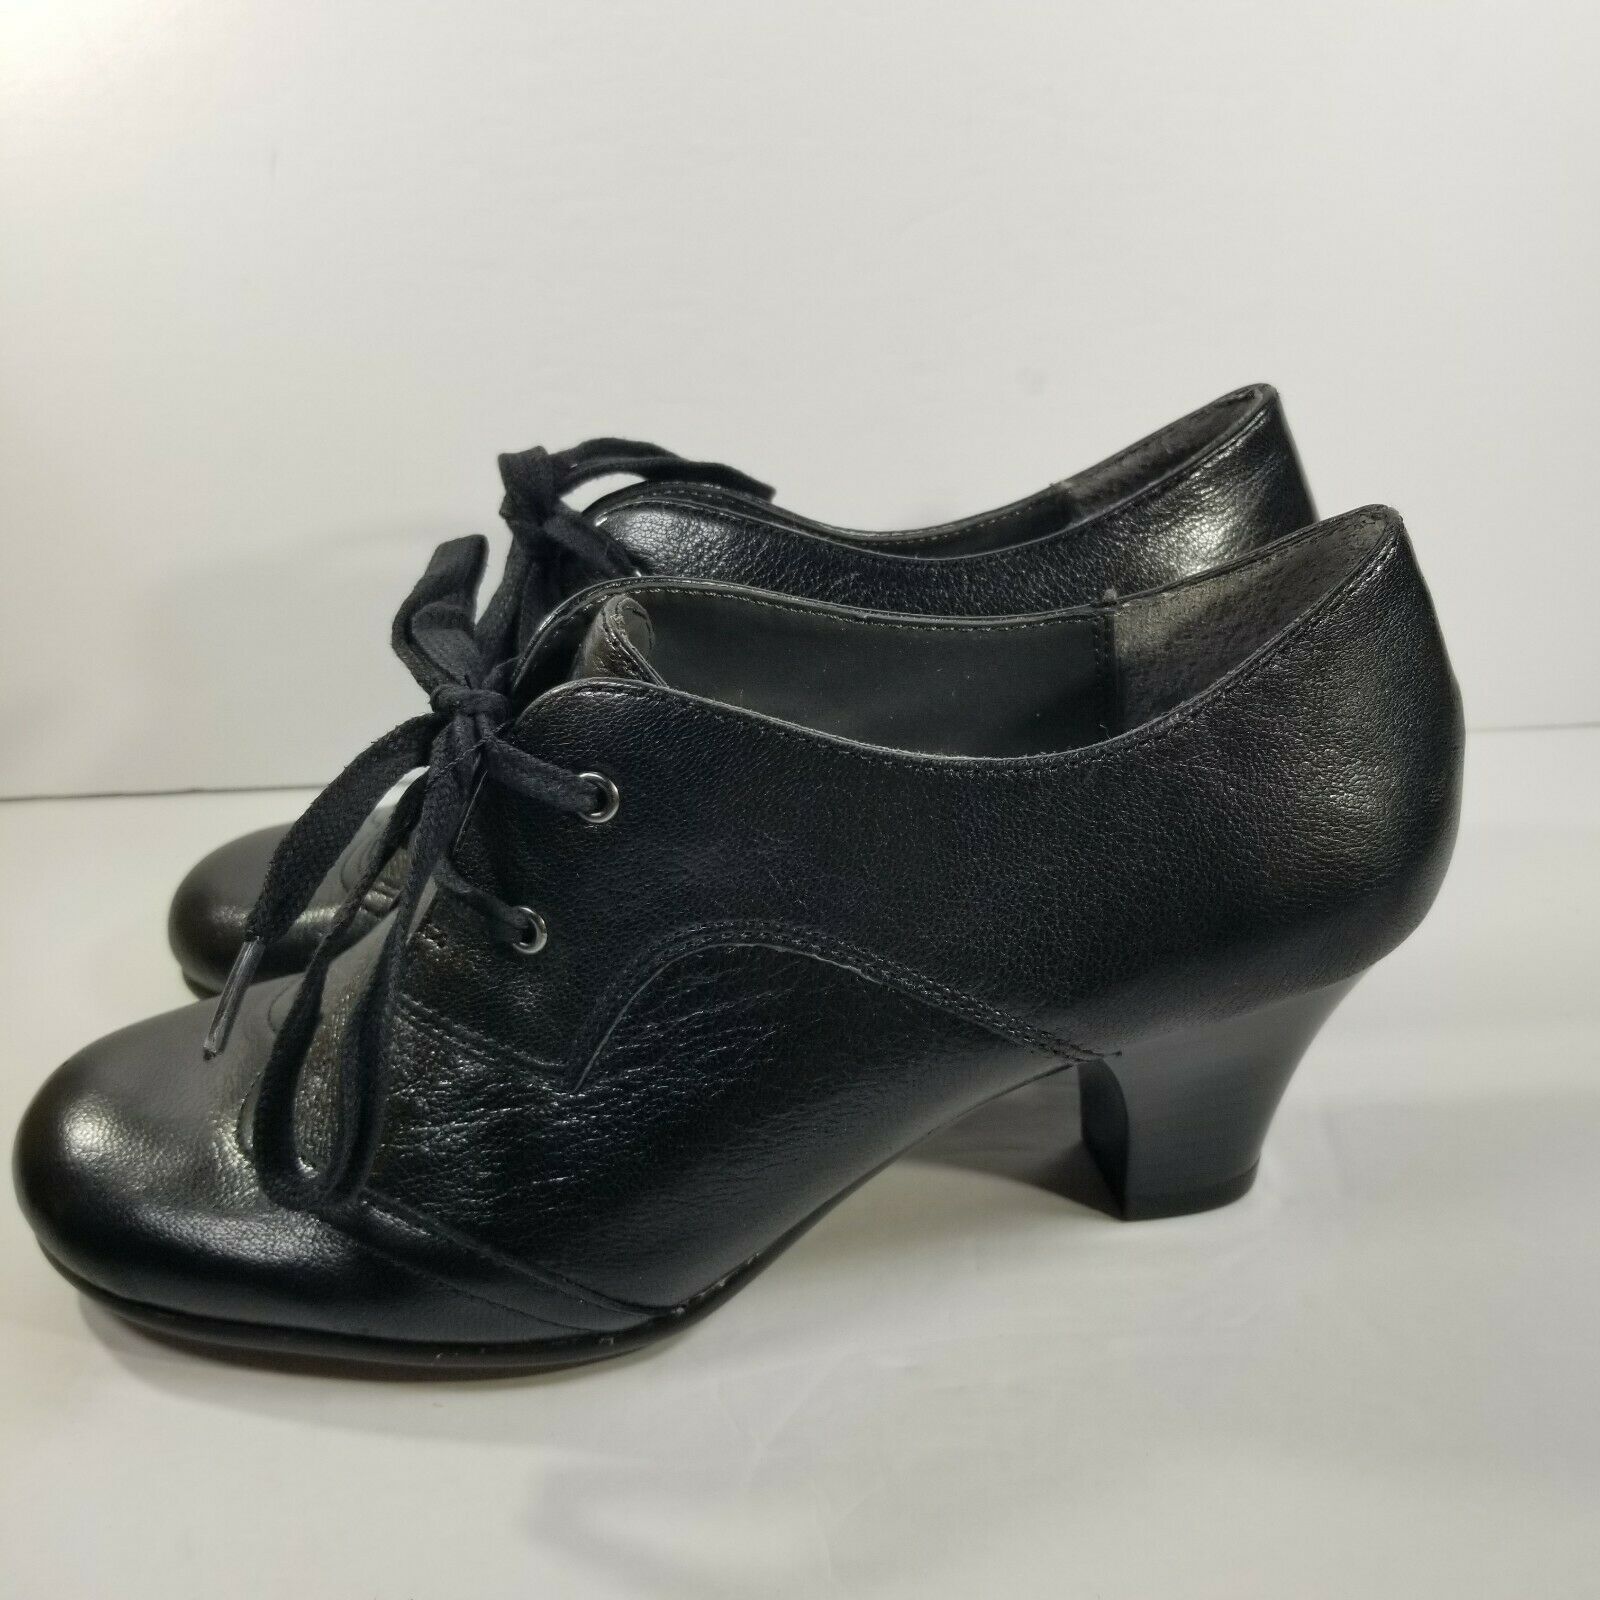 Aerosoles Aristocrat Womens Size 7M Black Leather Dress Pump Work Lace Up Shoes